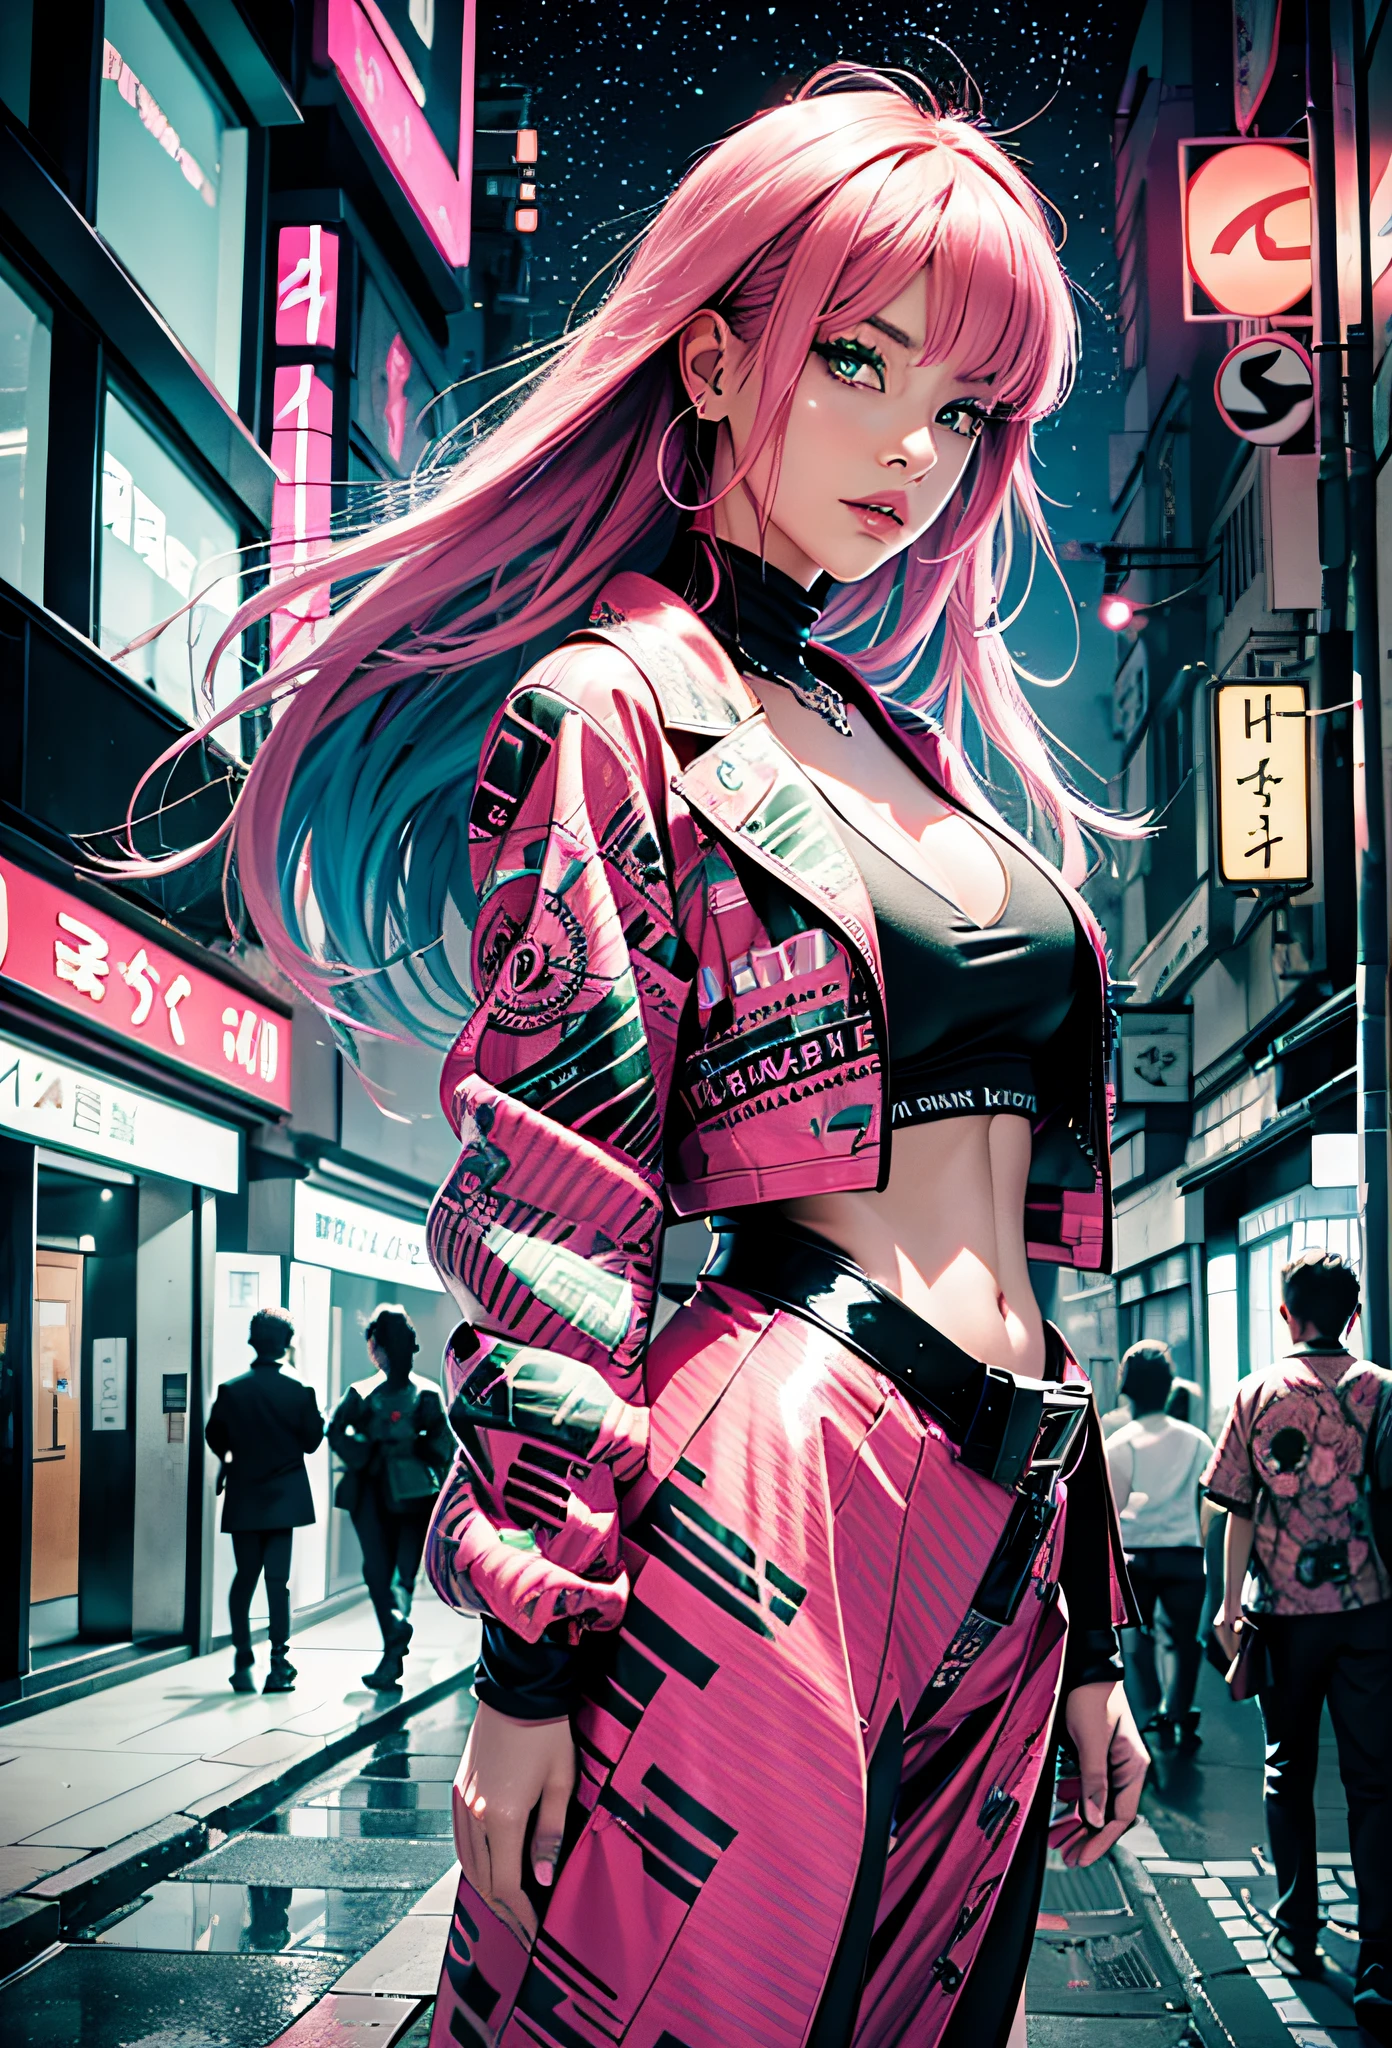 블랙핑크 ,분홍색 머리, 파란 눈, 녹색을 가진 섹시한 소녀 , 밤에 일본 도시를 배경으로,람보르기니 옆에